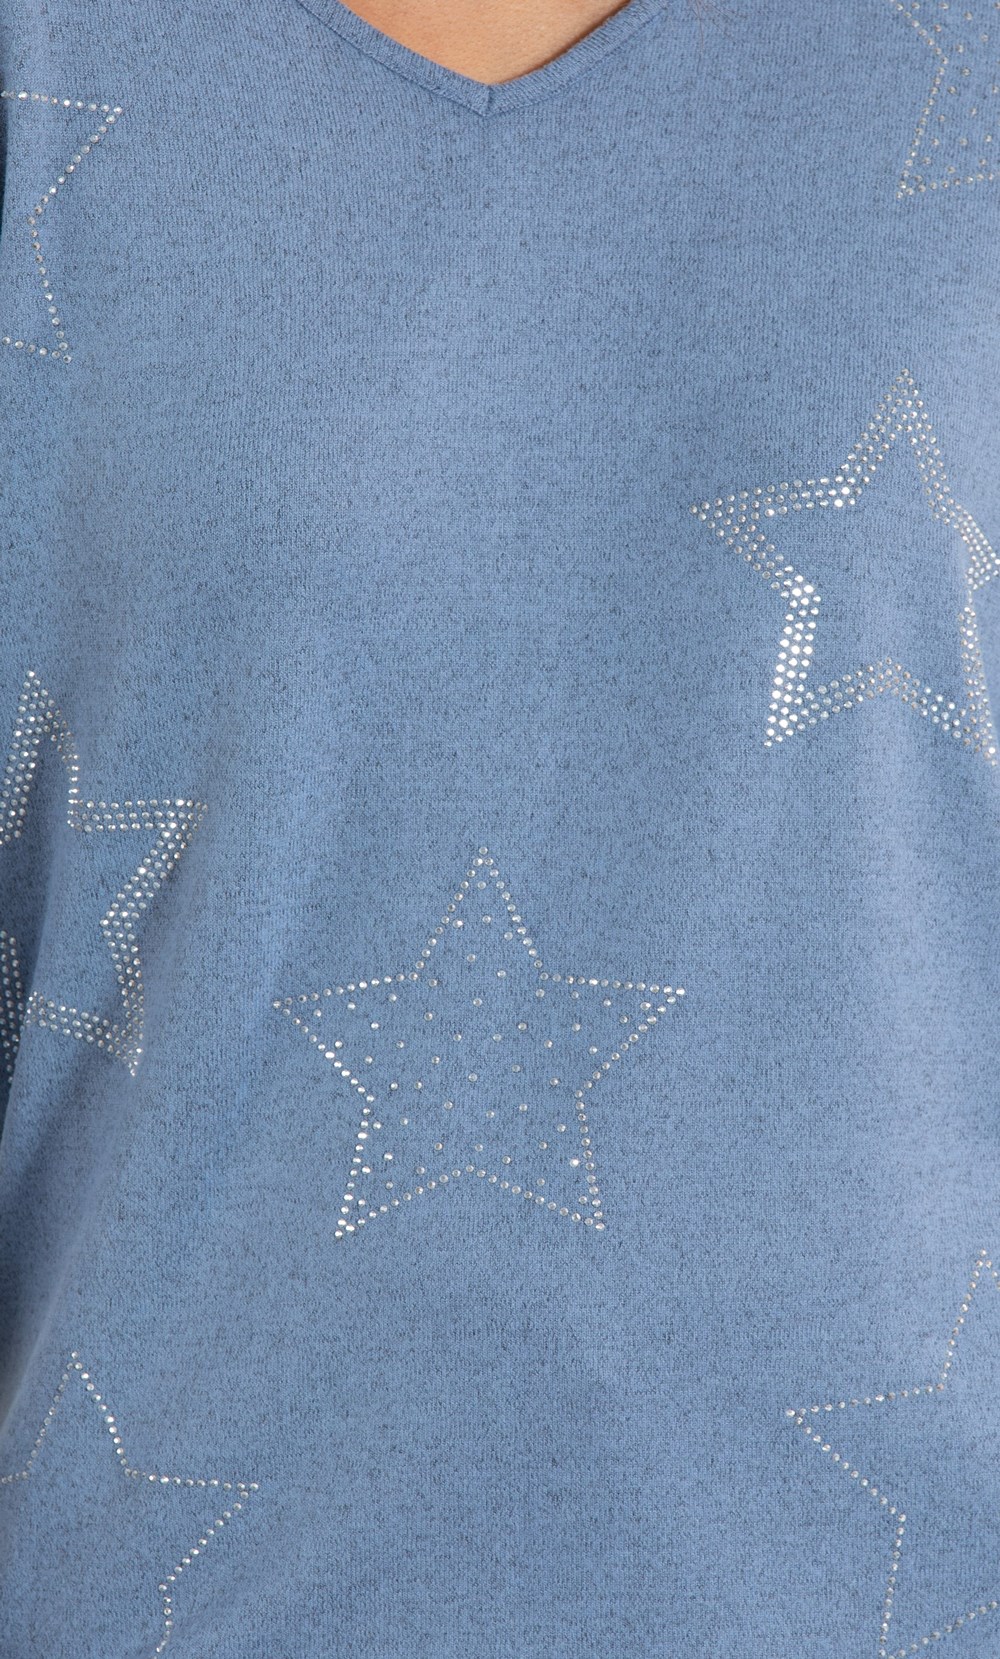 Super Soft Brushed Knit Embellished Star Lounge Top